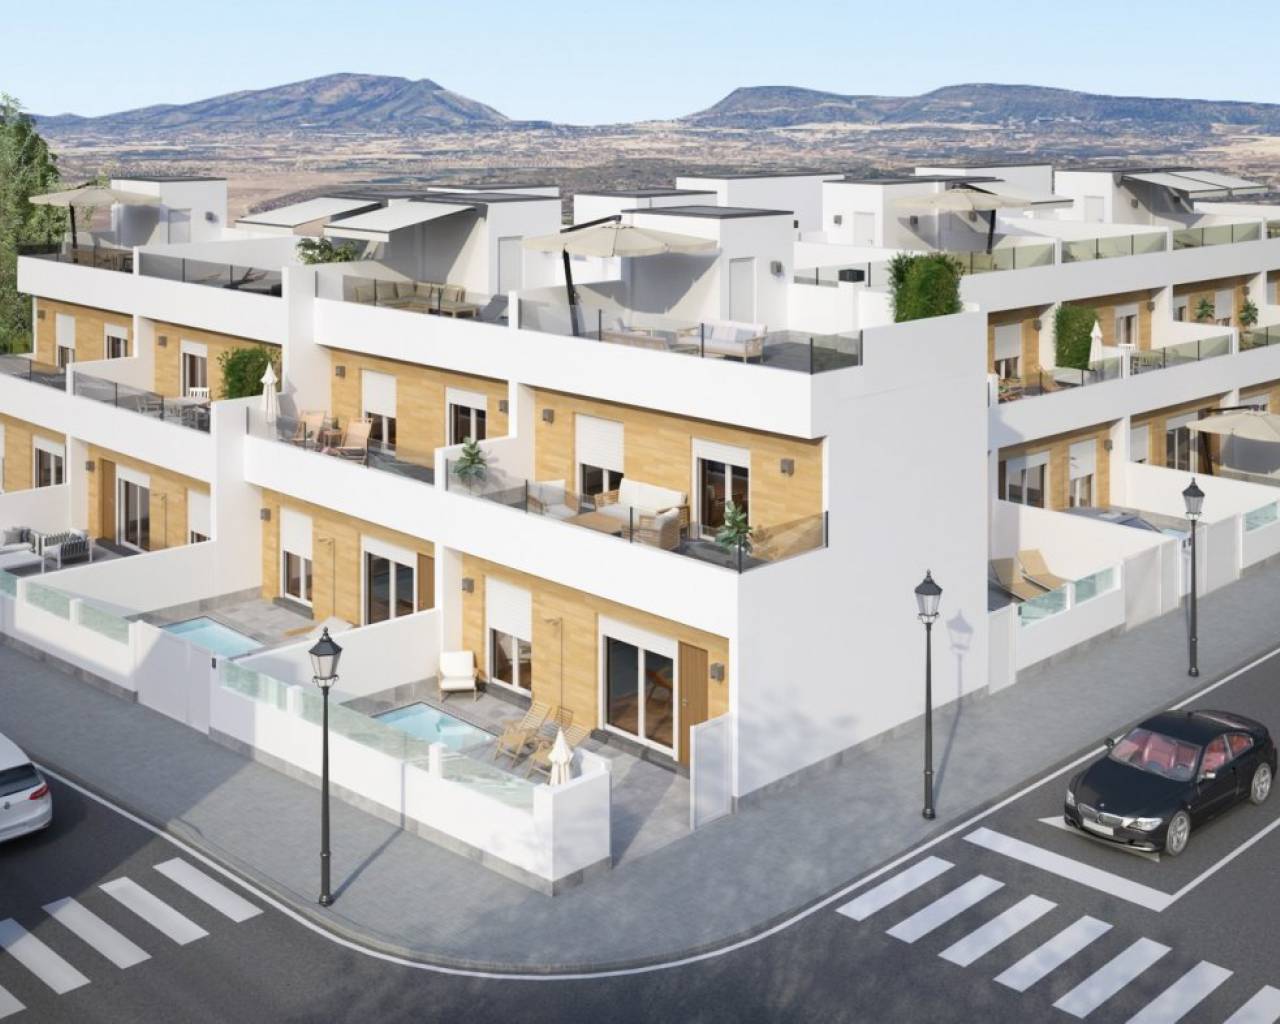 Nuova villa residenziale con piscina privata ad Avileses (Murcia)